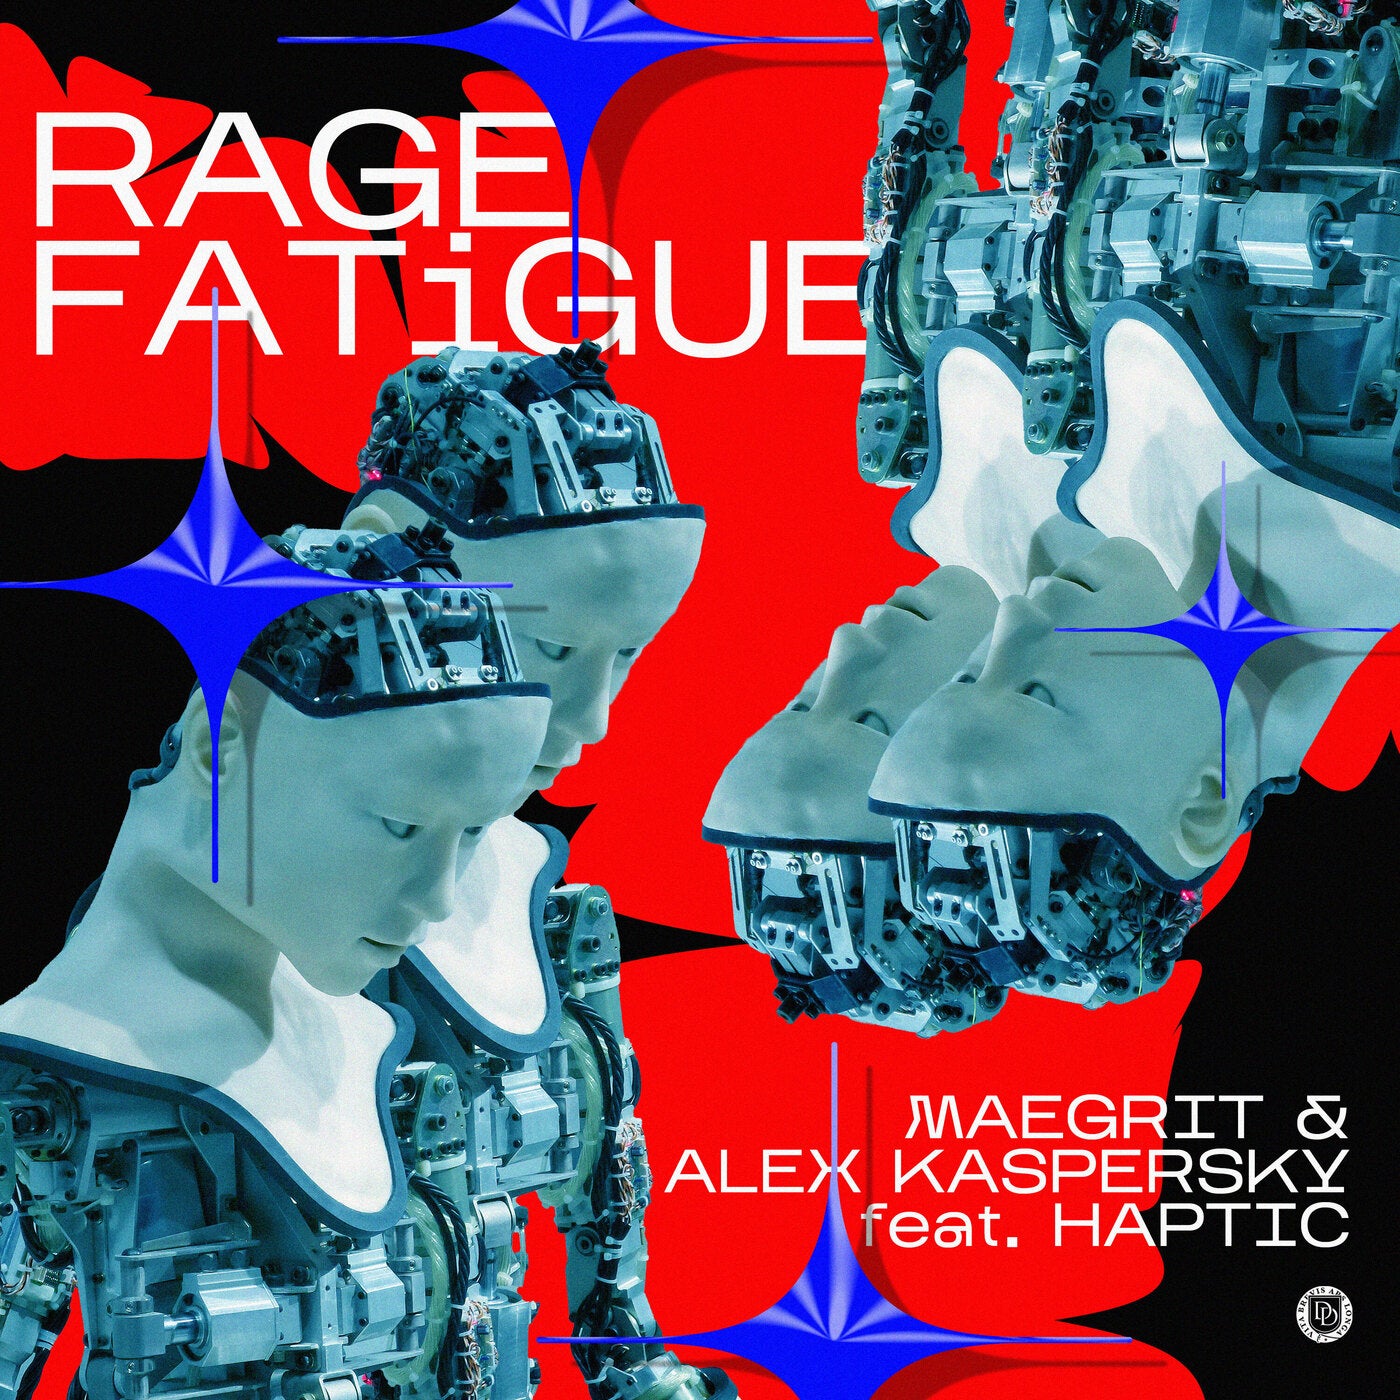 Rage Fatigue